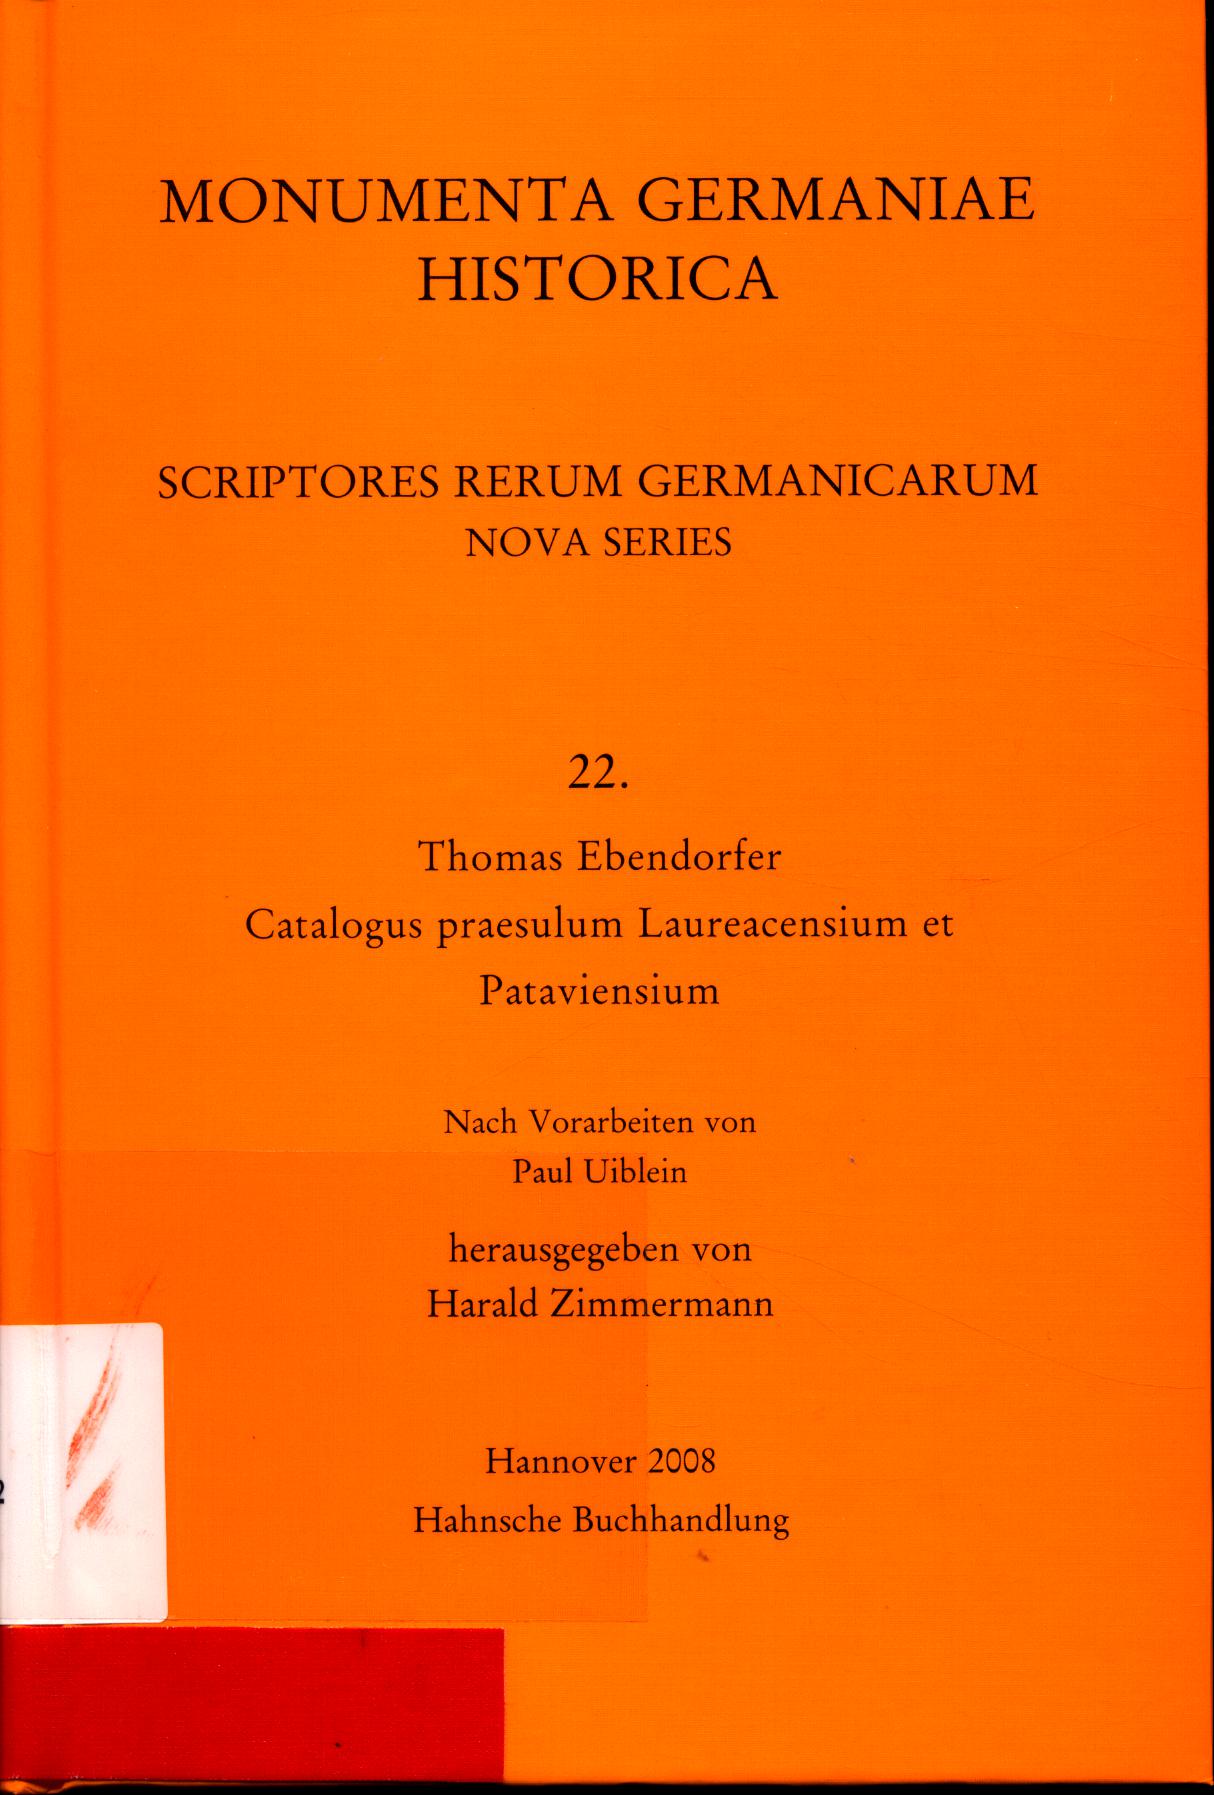 Catalogus praesulum Laureacensium et Pataviensium Nach Vorarbeiten von Paul Uiblein - Ebendorfer, Thomas und Harald Zimmermann